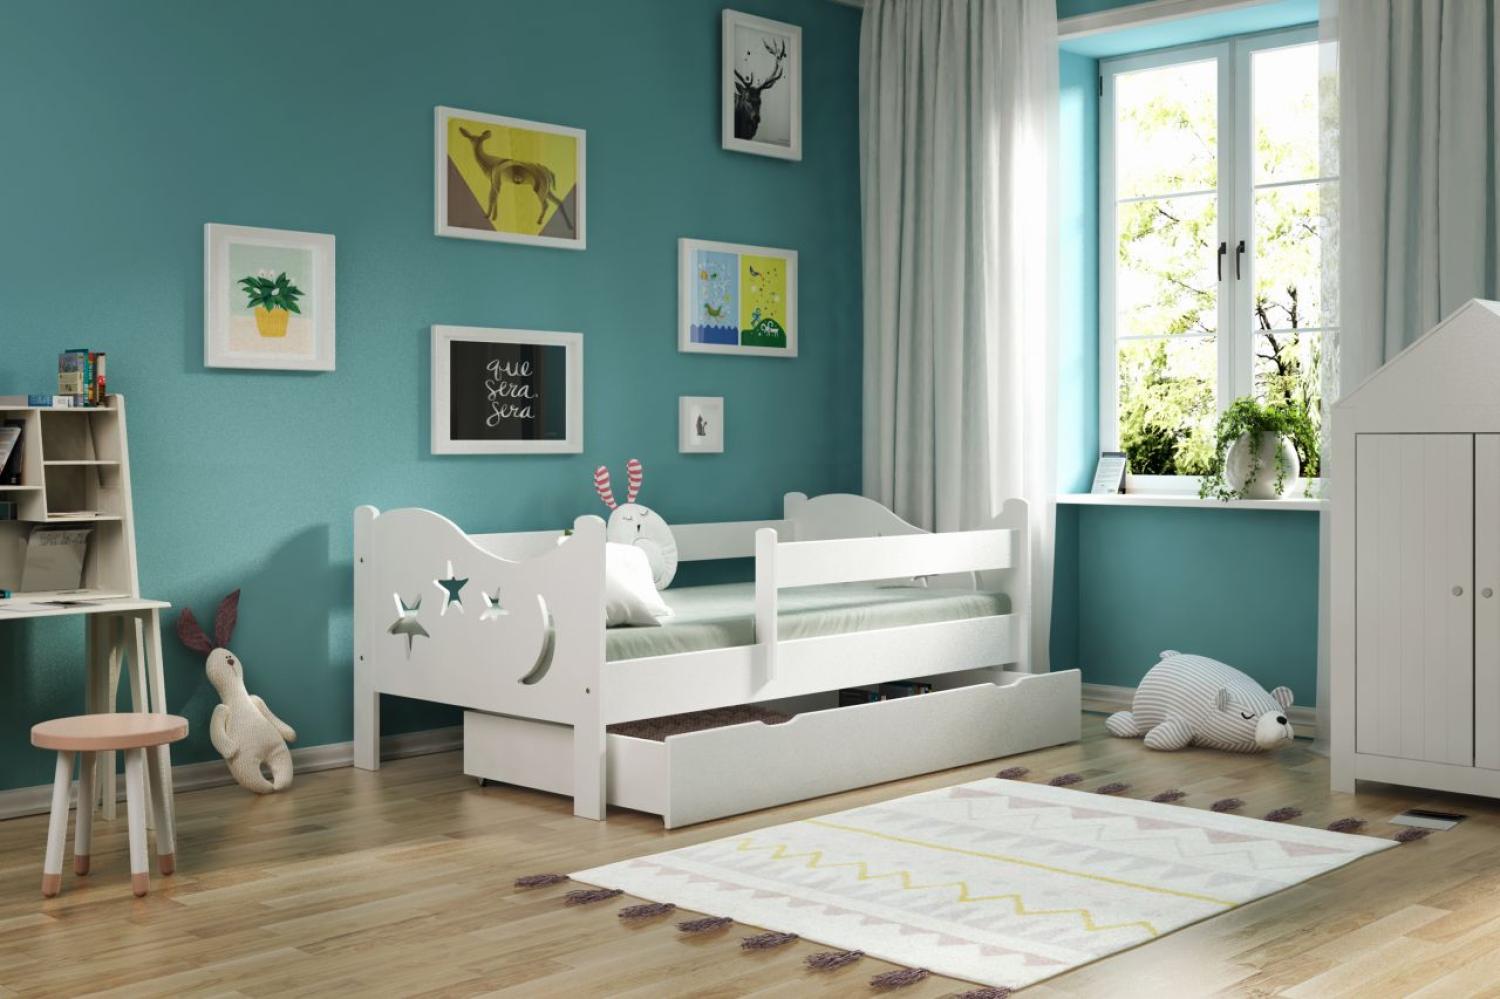 Kinderbettenwelt 'Chrisi' Kinderbett 80x180 cm, Weiß, Kiefer massiv, inkl. Schublade, Lattenrost und Matratze Bild 1